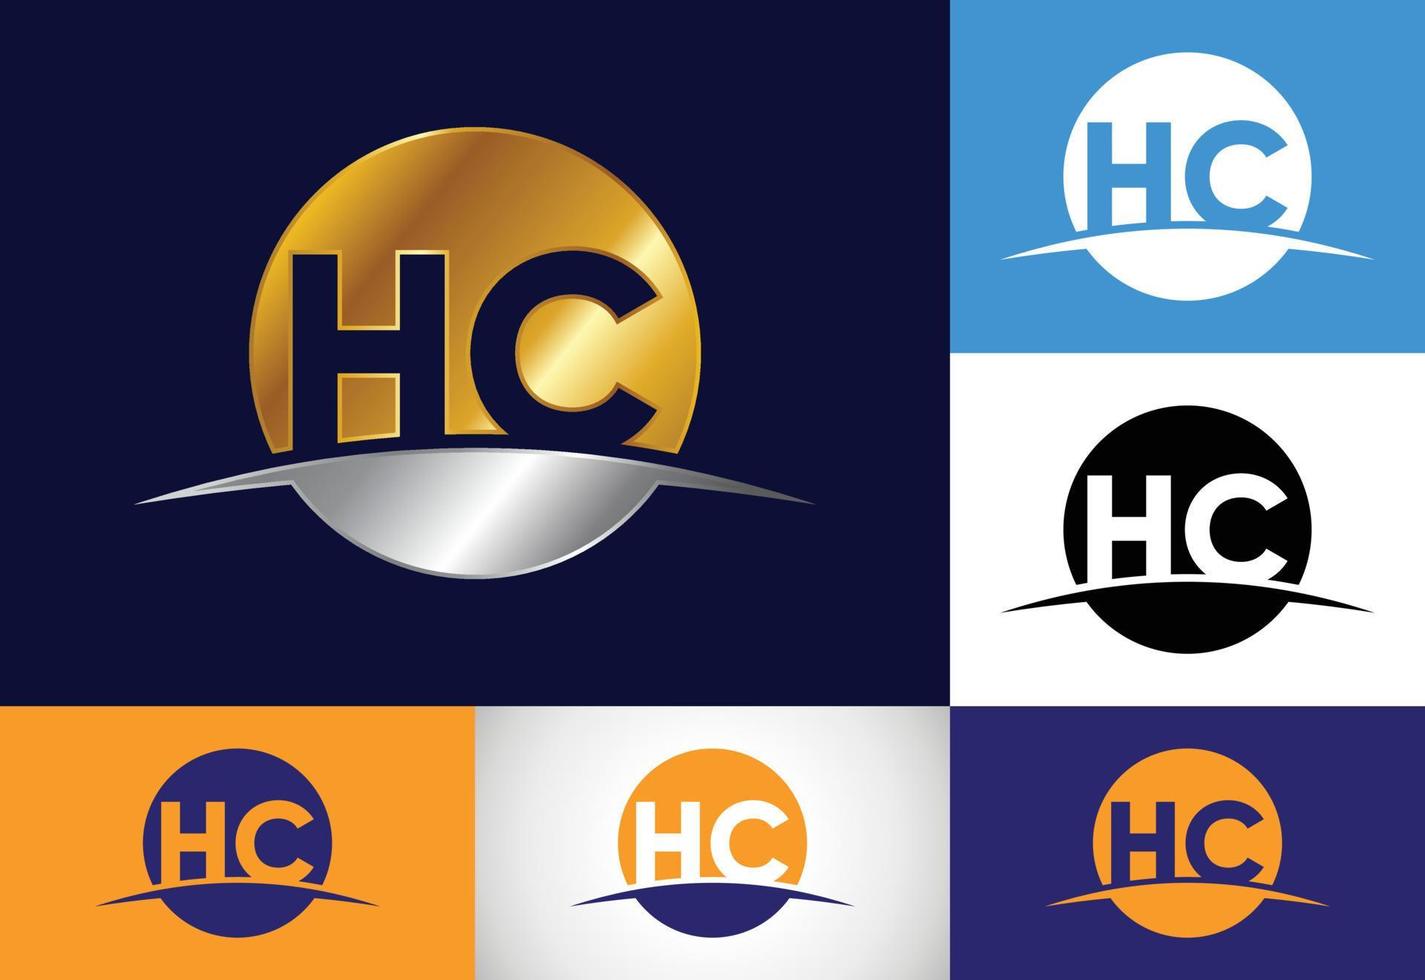 första bokstaven hc logotyp design vektor. grafisk alfabetsymbol för företagets företagsidentitet vektor